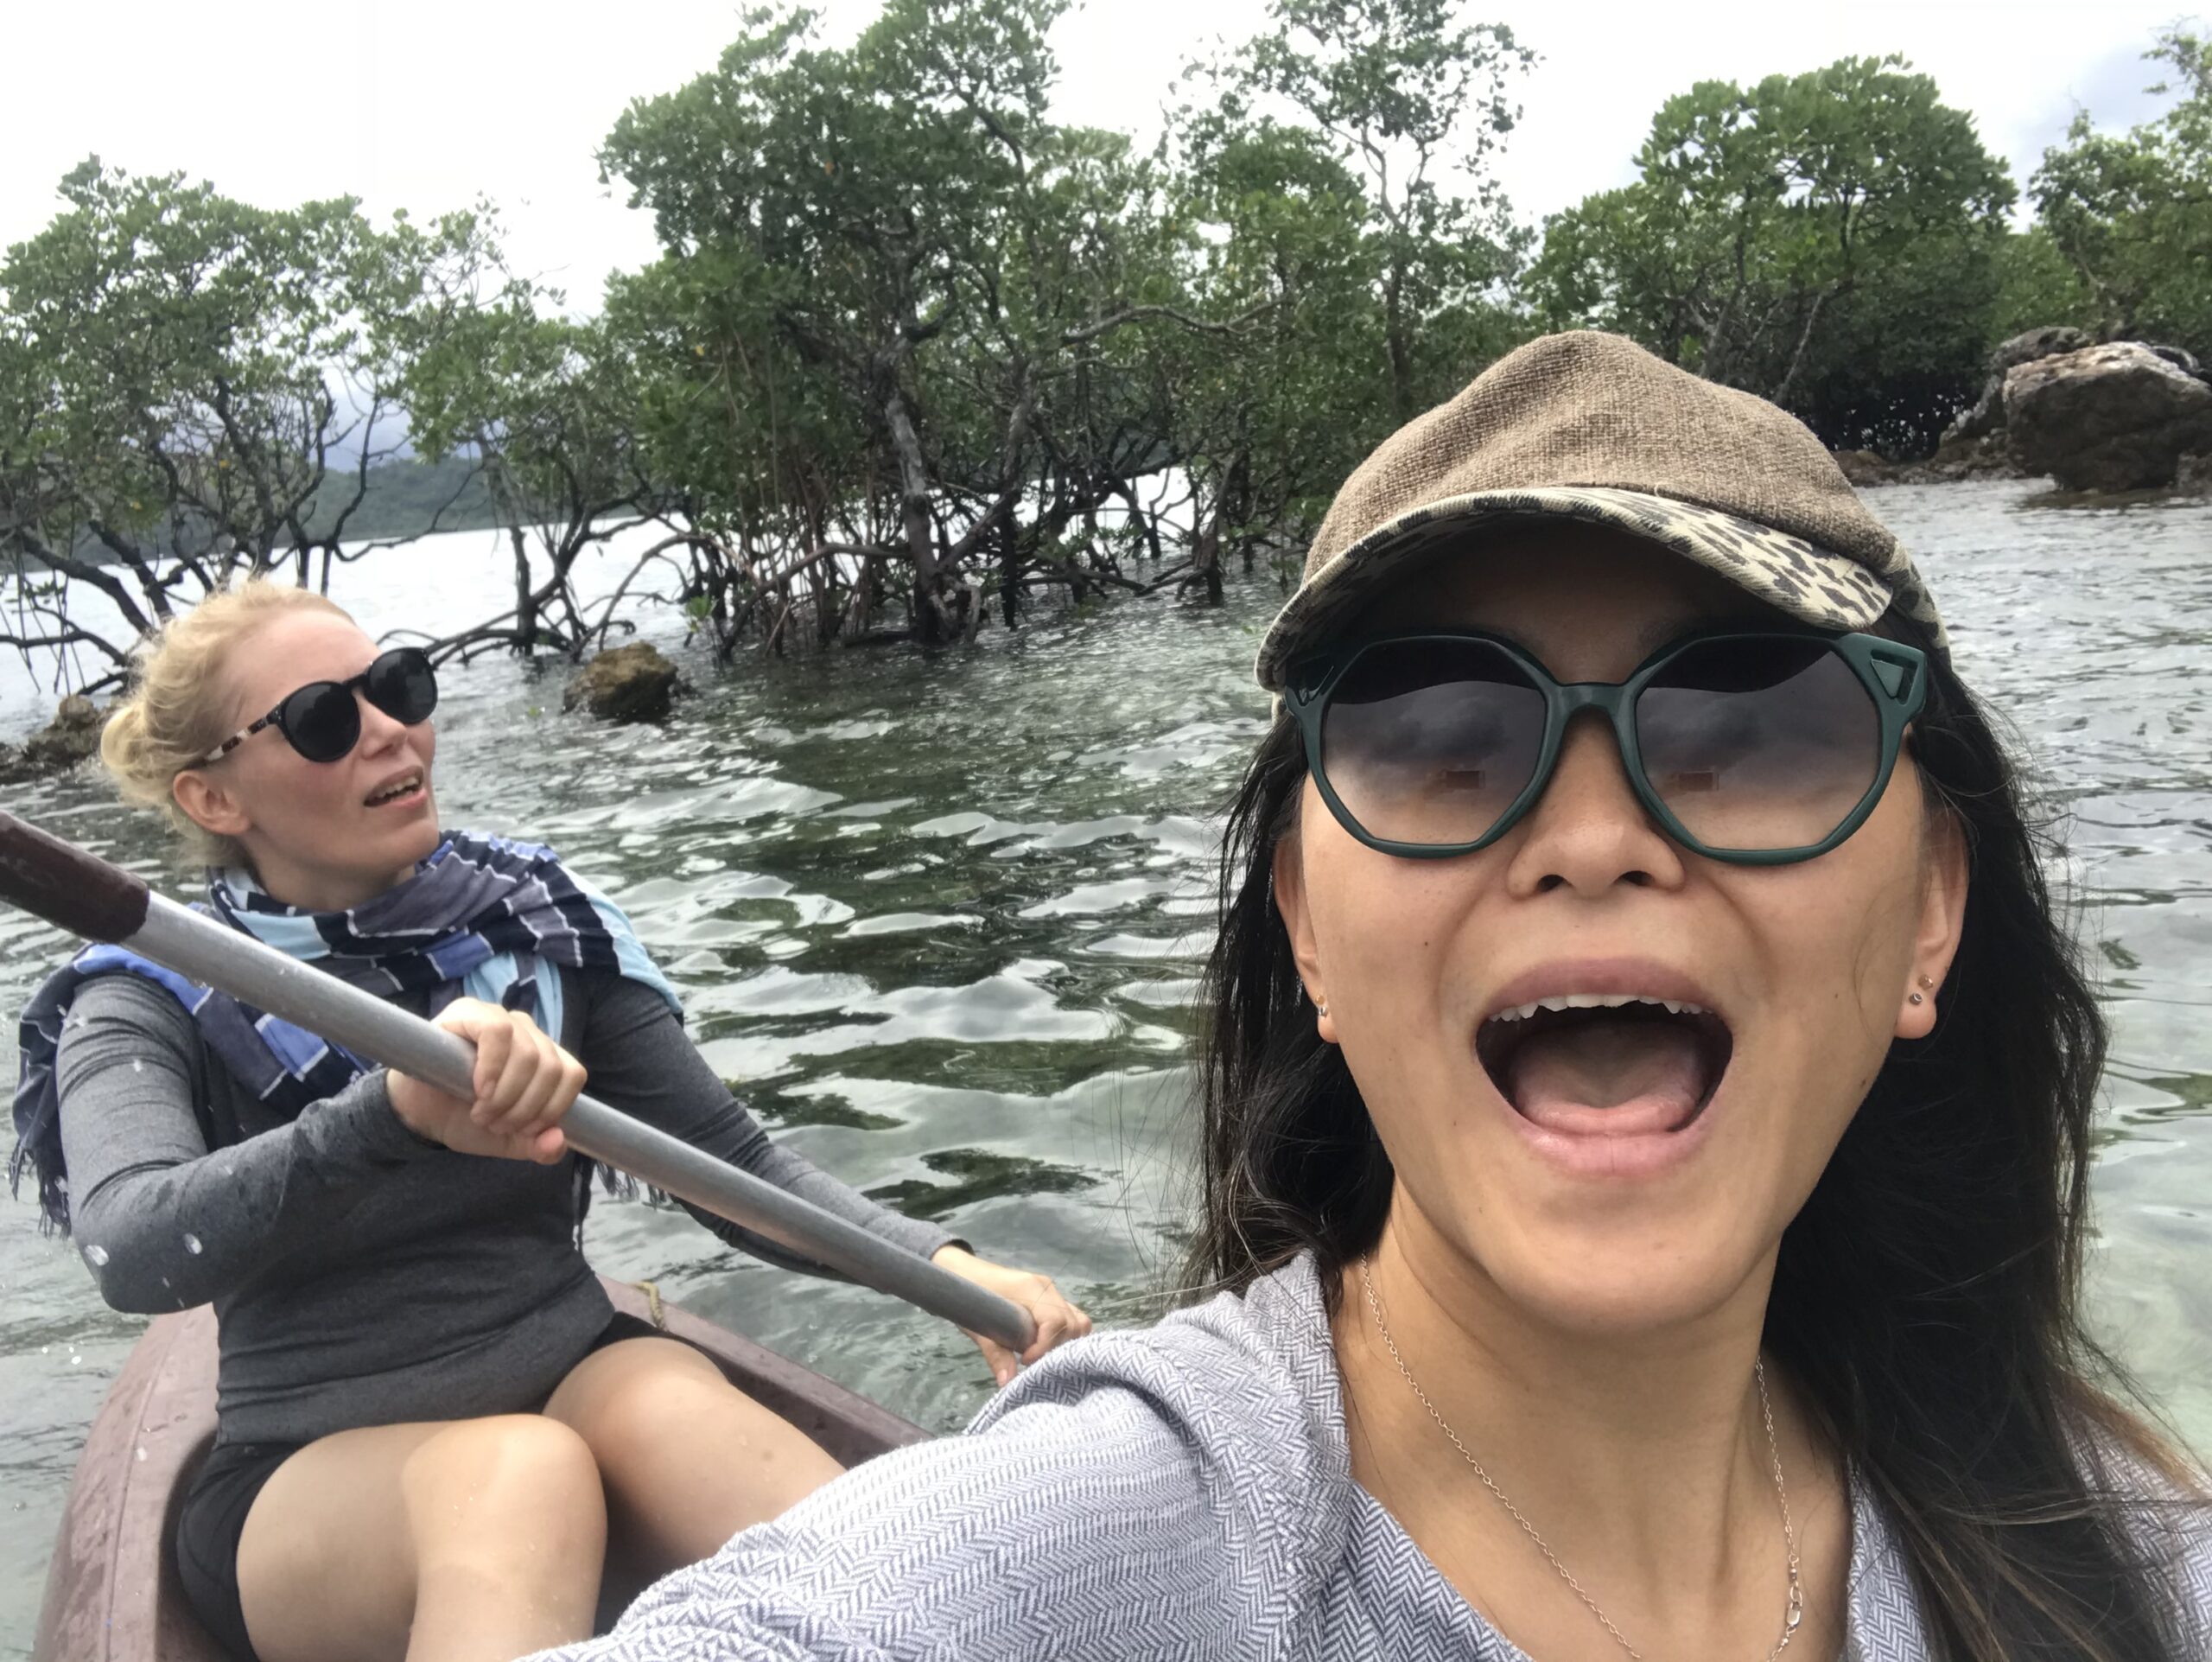 Canoeing amongst mangroves